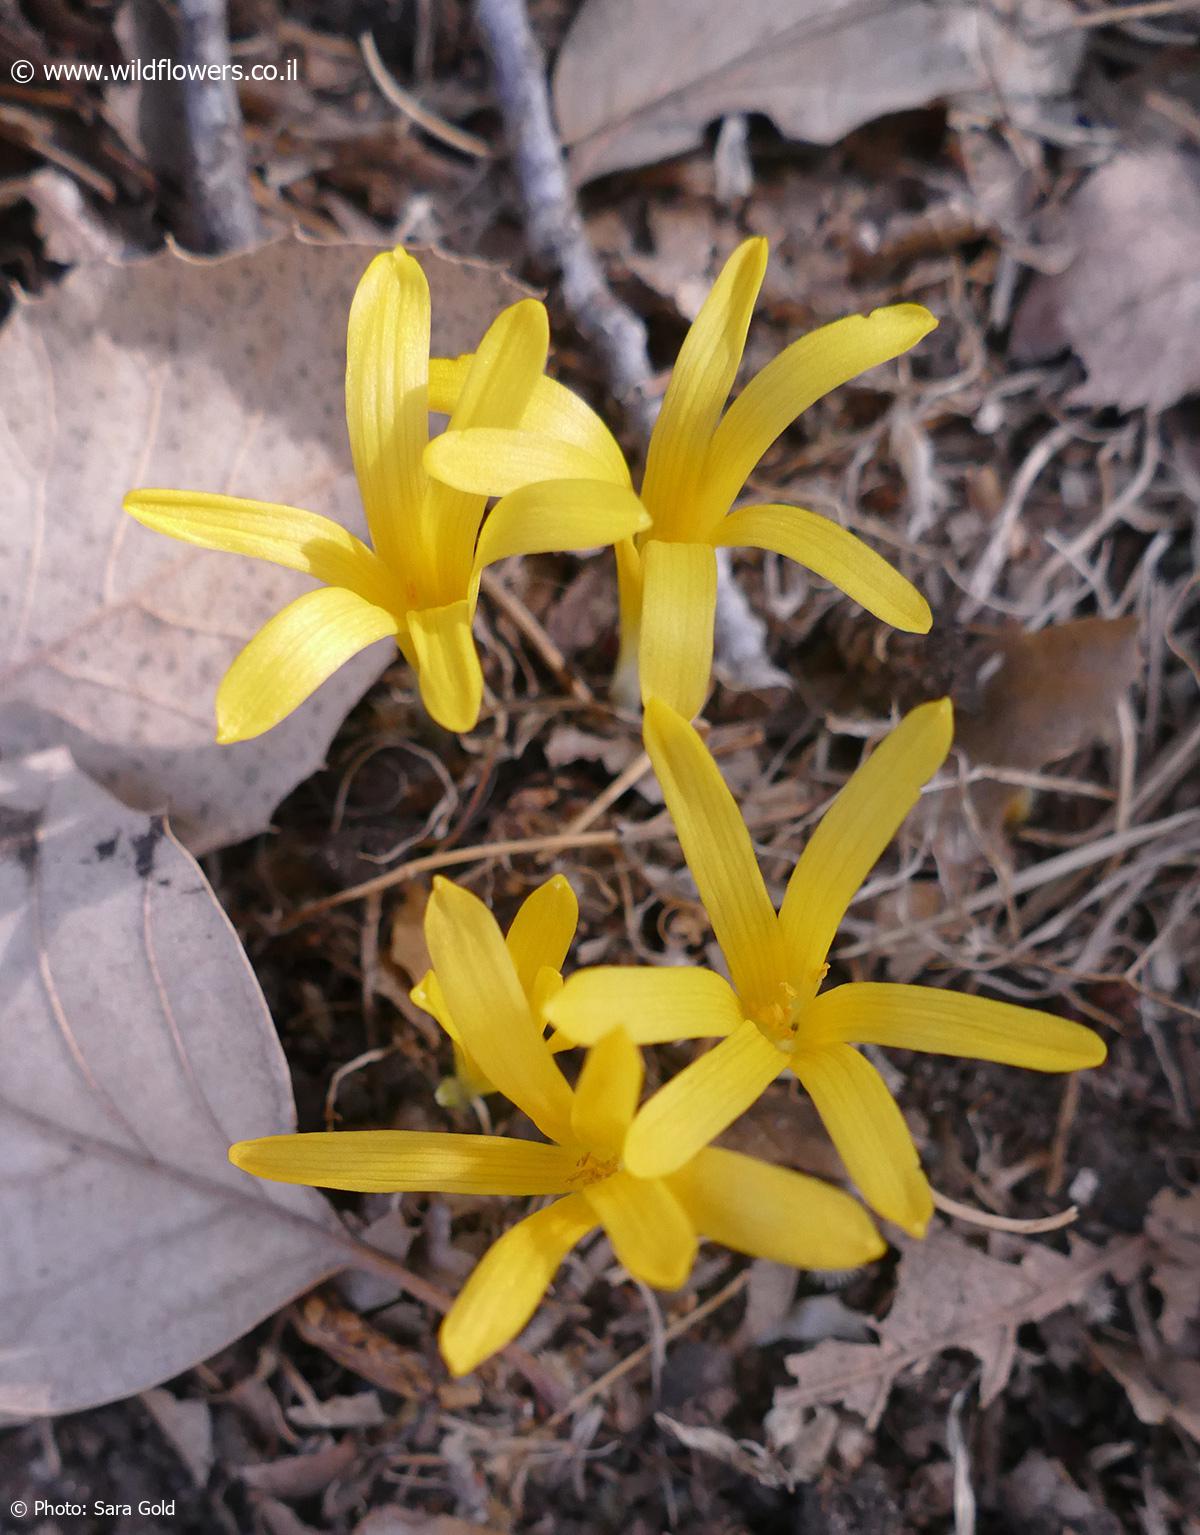 Sternbergia colchiciflora